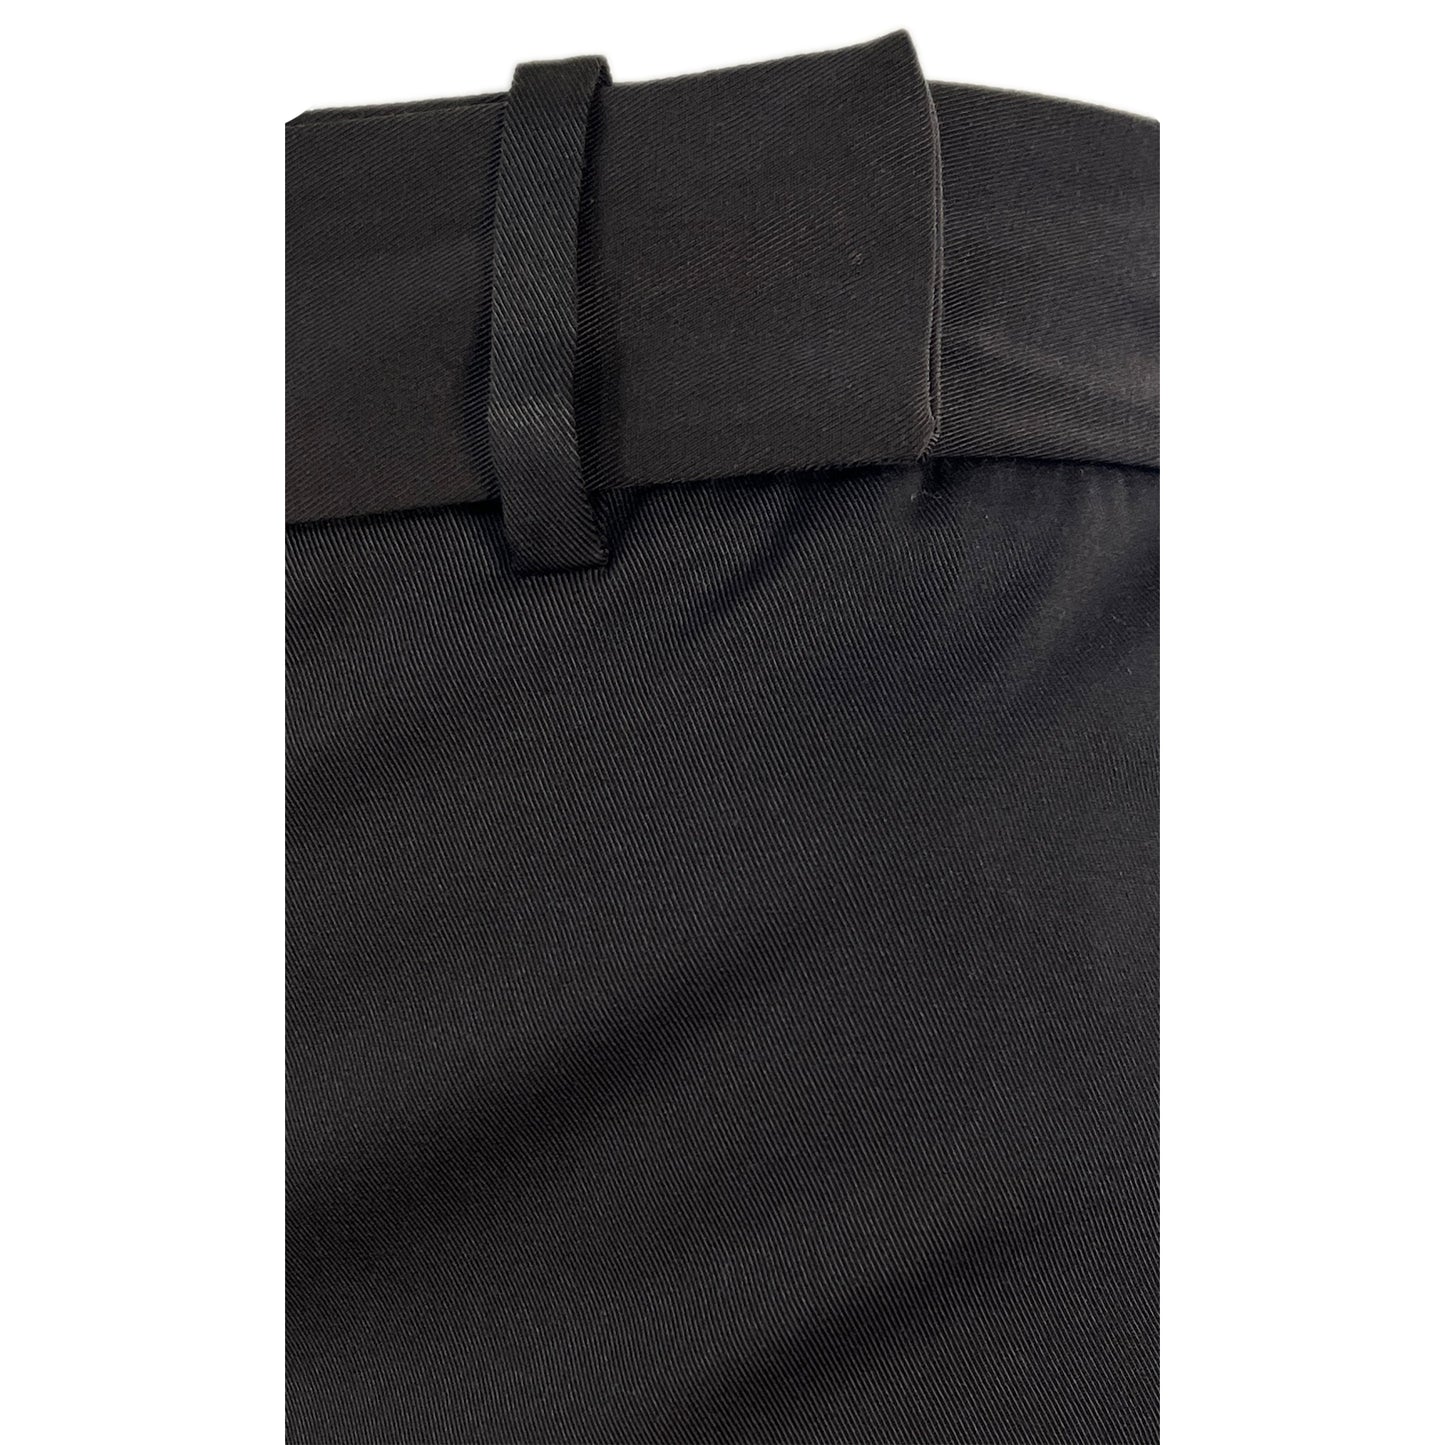 Ann Taylor Dress Pants Dark Brown Size 10P SKU 000276-14